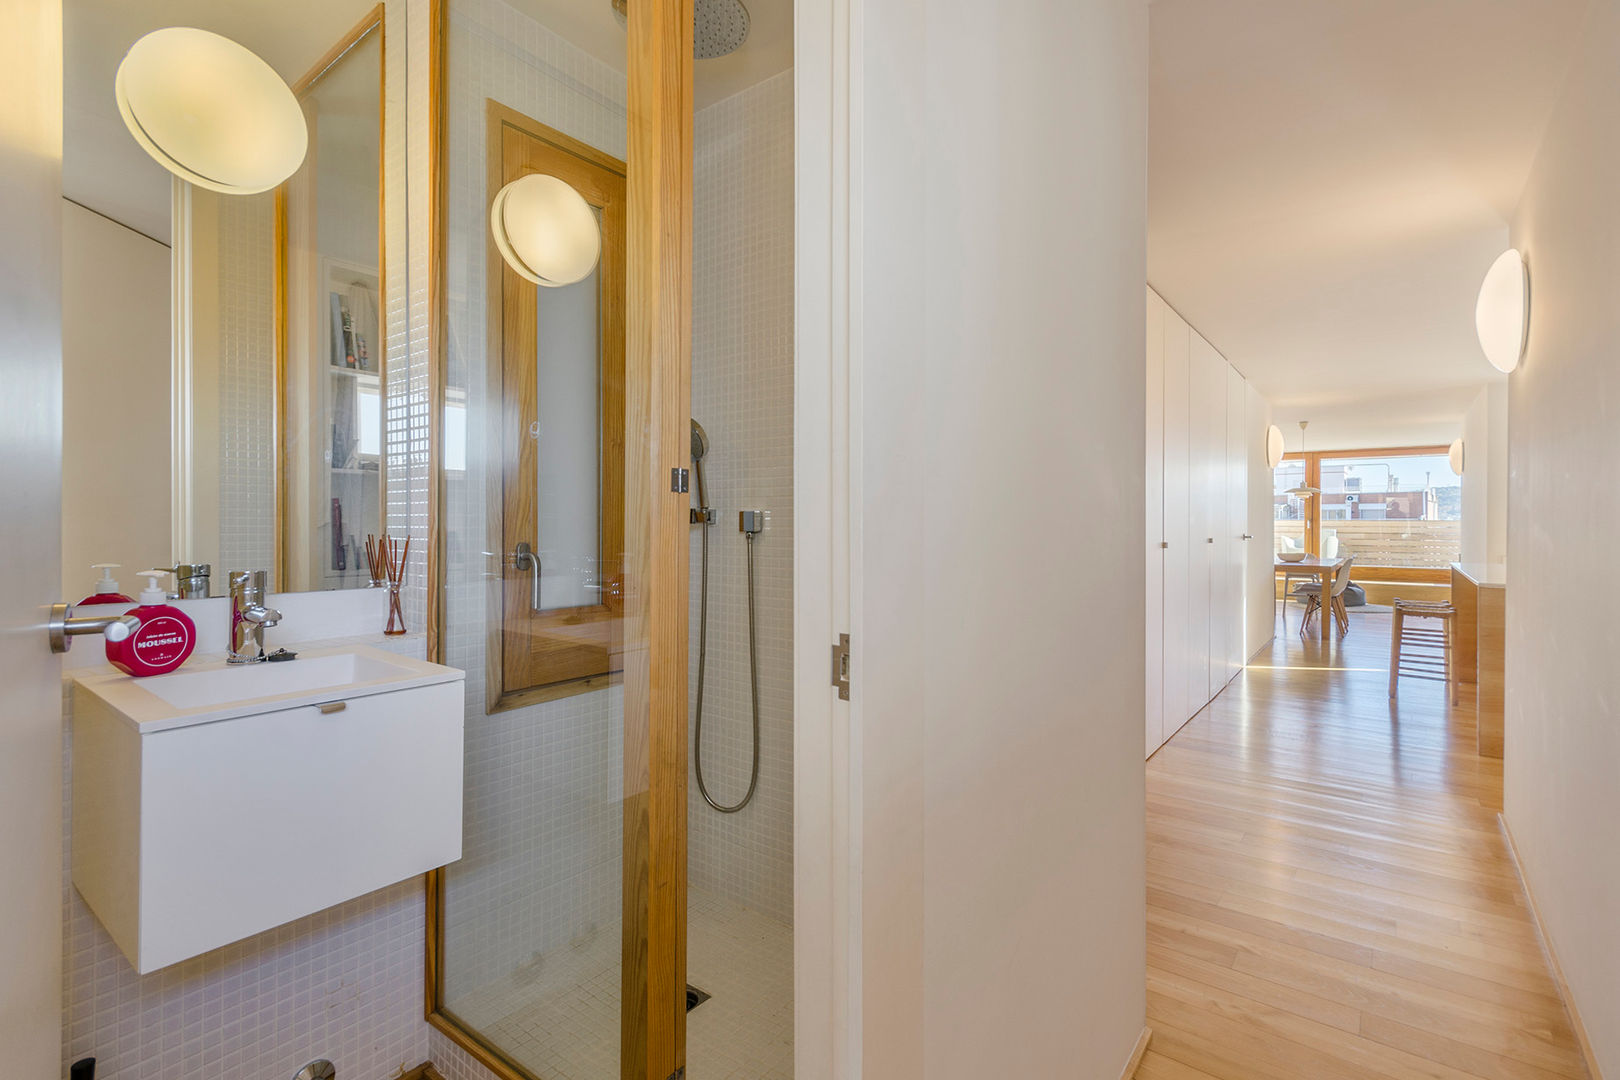 homify Baños de estilo moderno Madera maciza Multicolor madera en baños,baño moderno,cristal baño,baño en blanco,pavimento de madera,suelos de madera,baño diseño